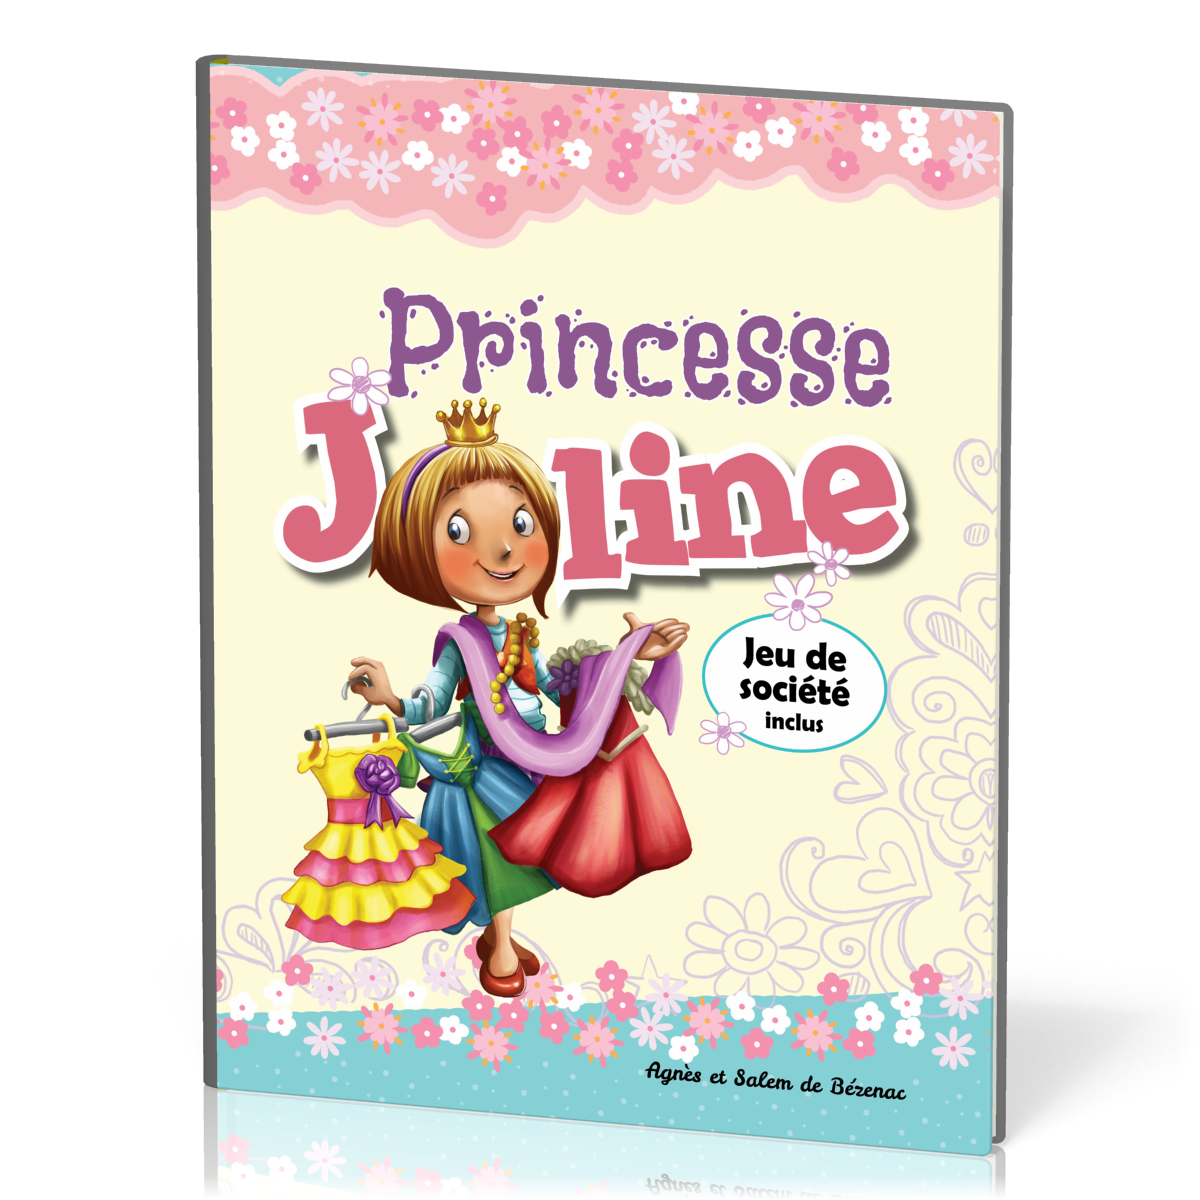 Princesse Joline - Jeu de société inclus